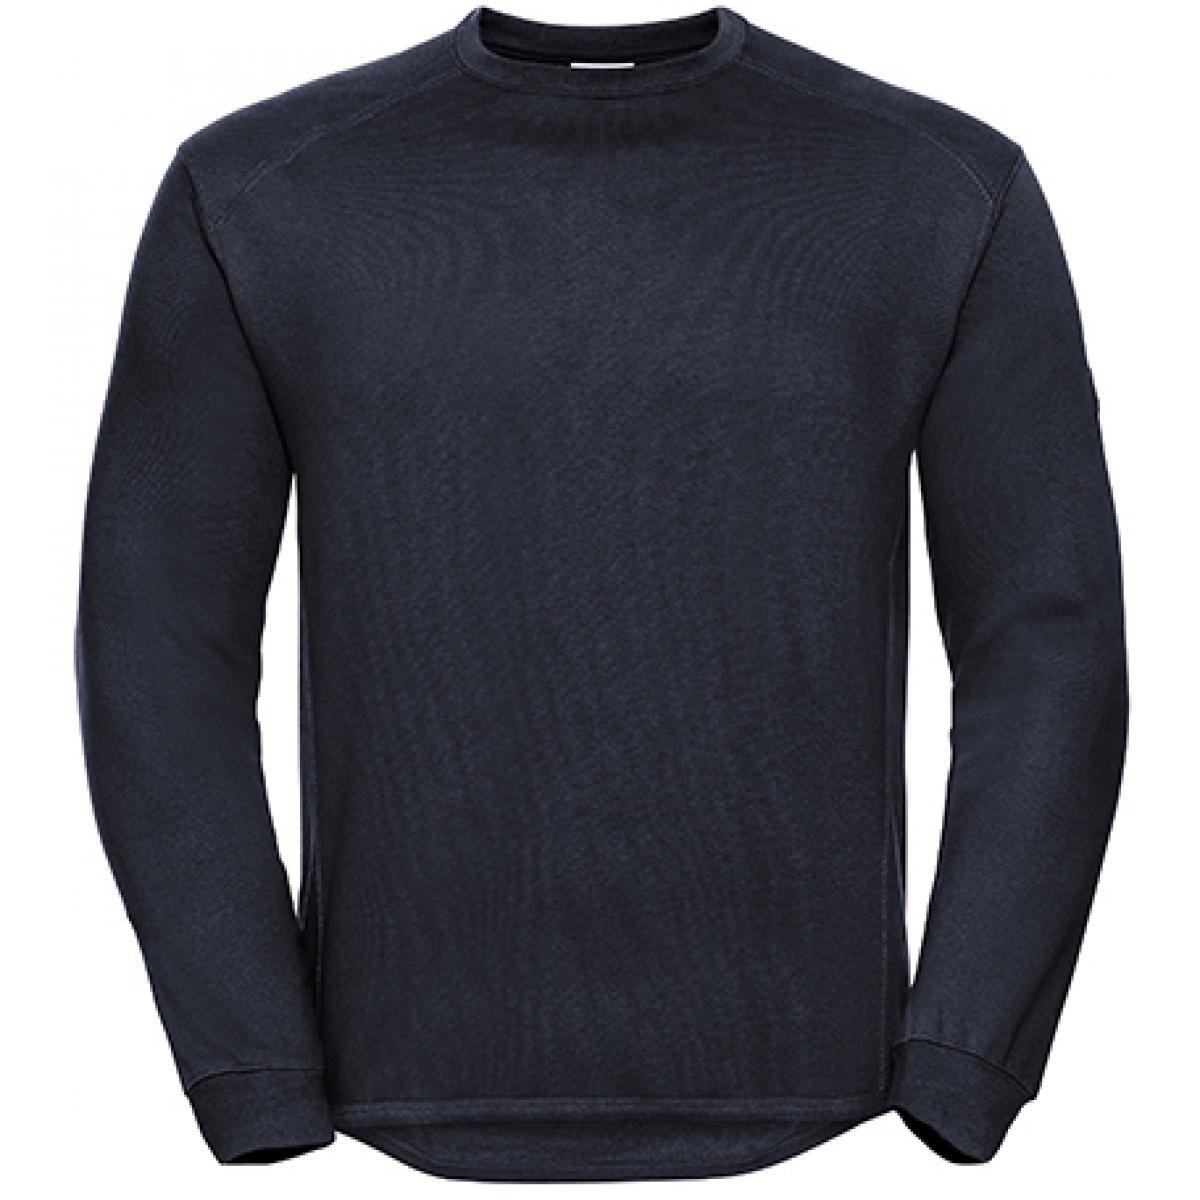 Hersteller: Russell Herstellernummer: R-013M-0 Artikelbezeichnung: Workwear-Sweatshirt / Pullover Farbe: French Navy